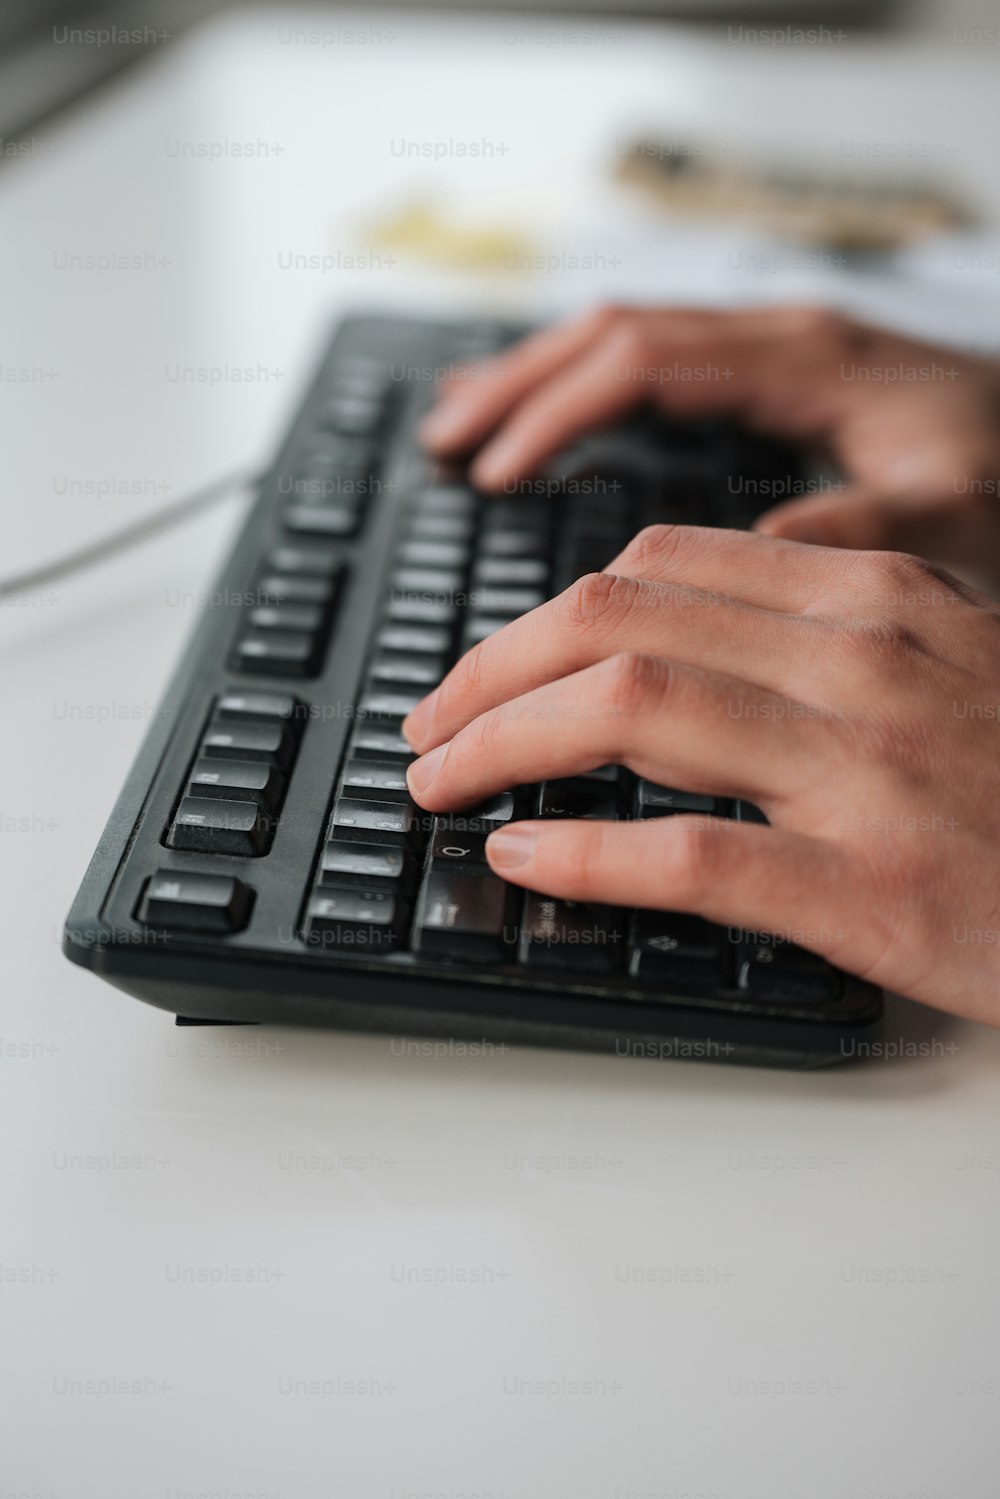 une personne tapant sur un clavier